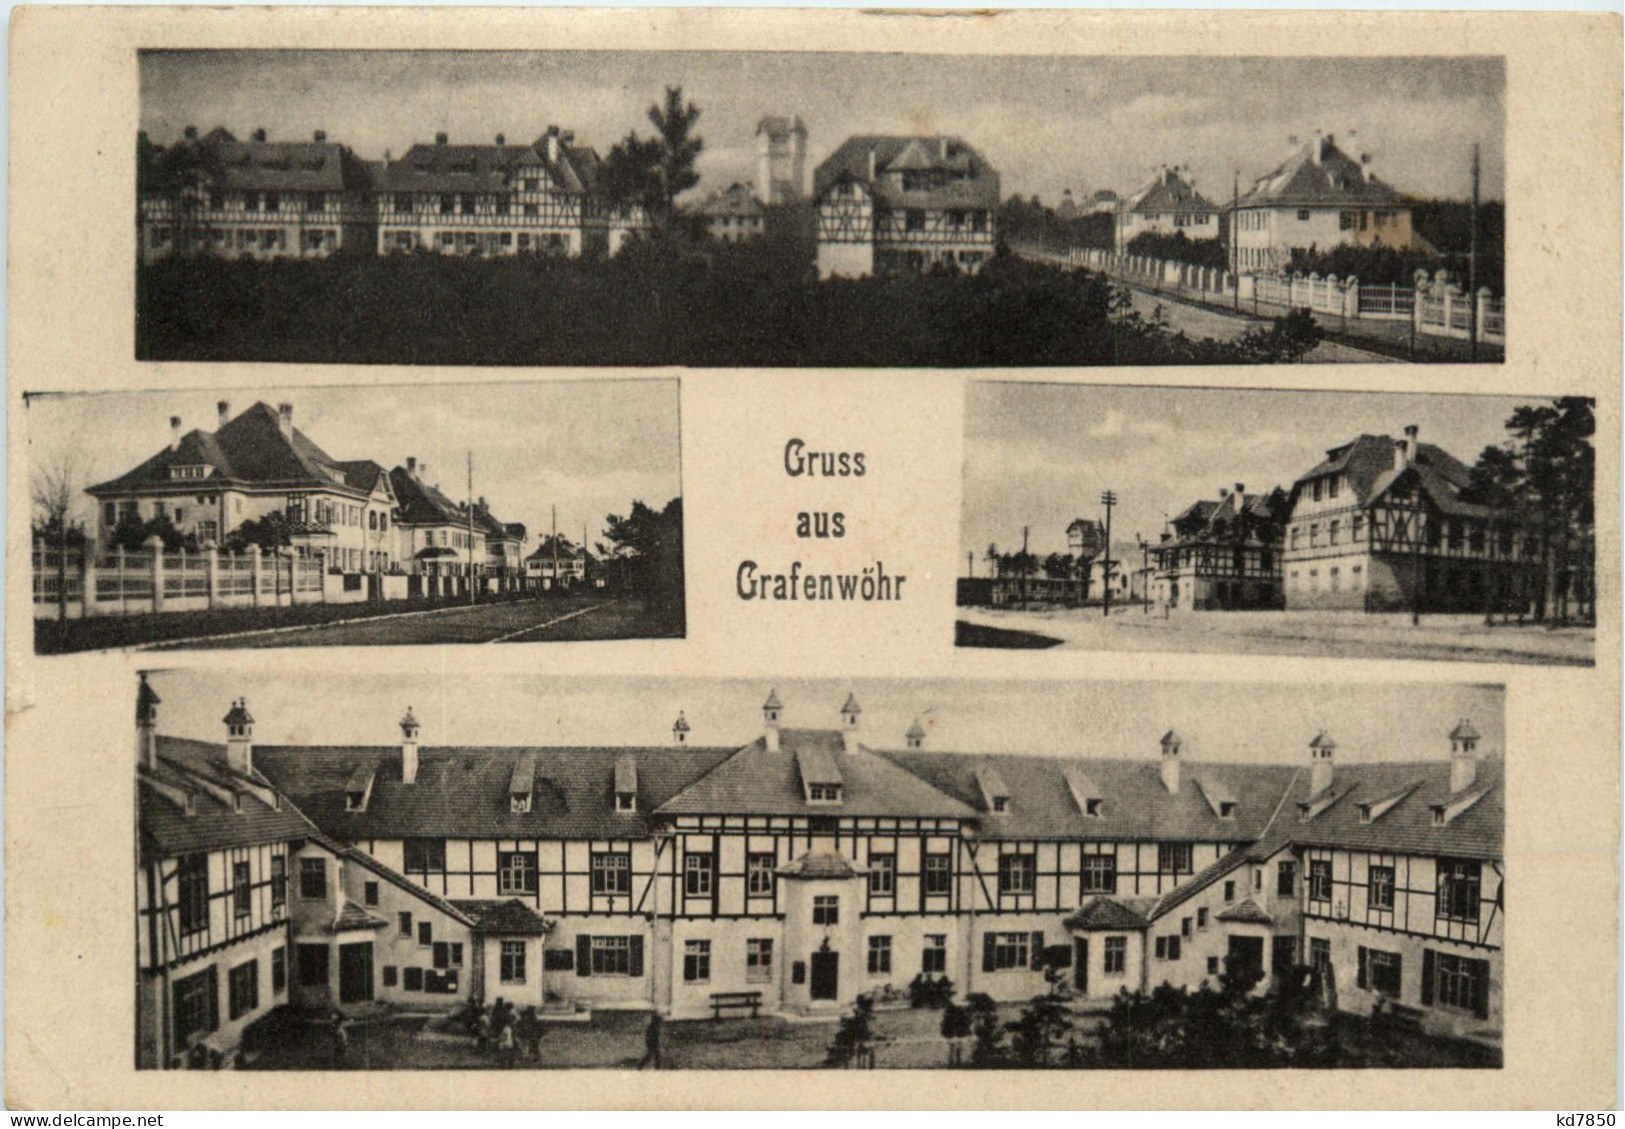 Truppenübungsplatz Grafenwöhr - Grafenwoehr